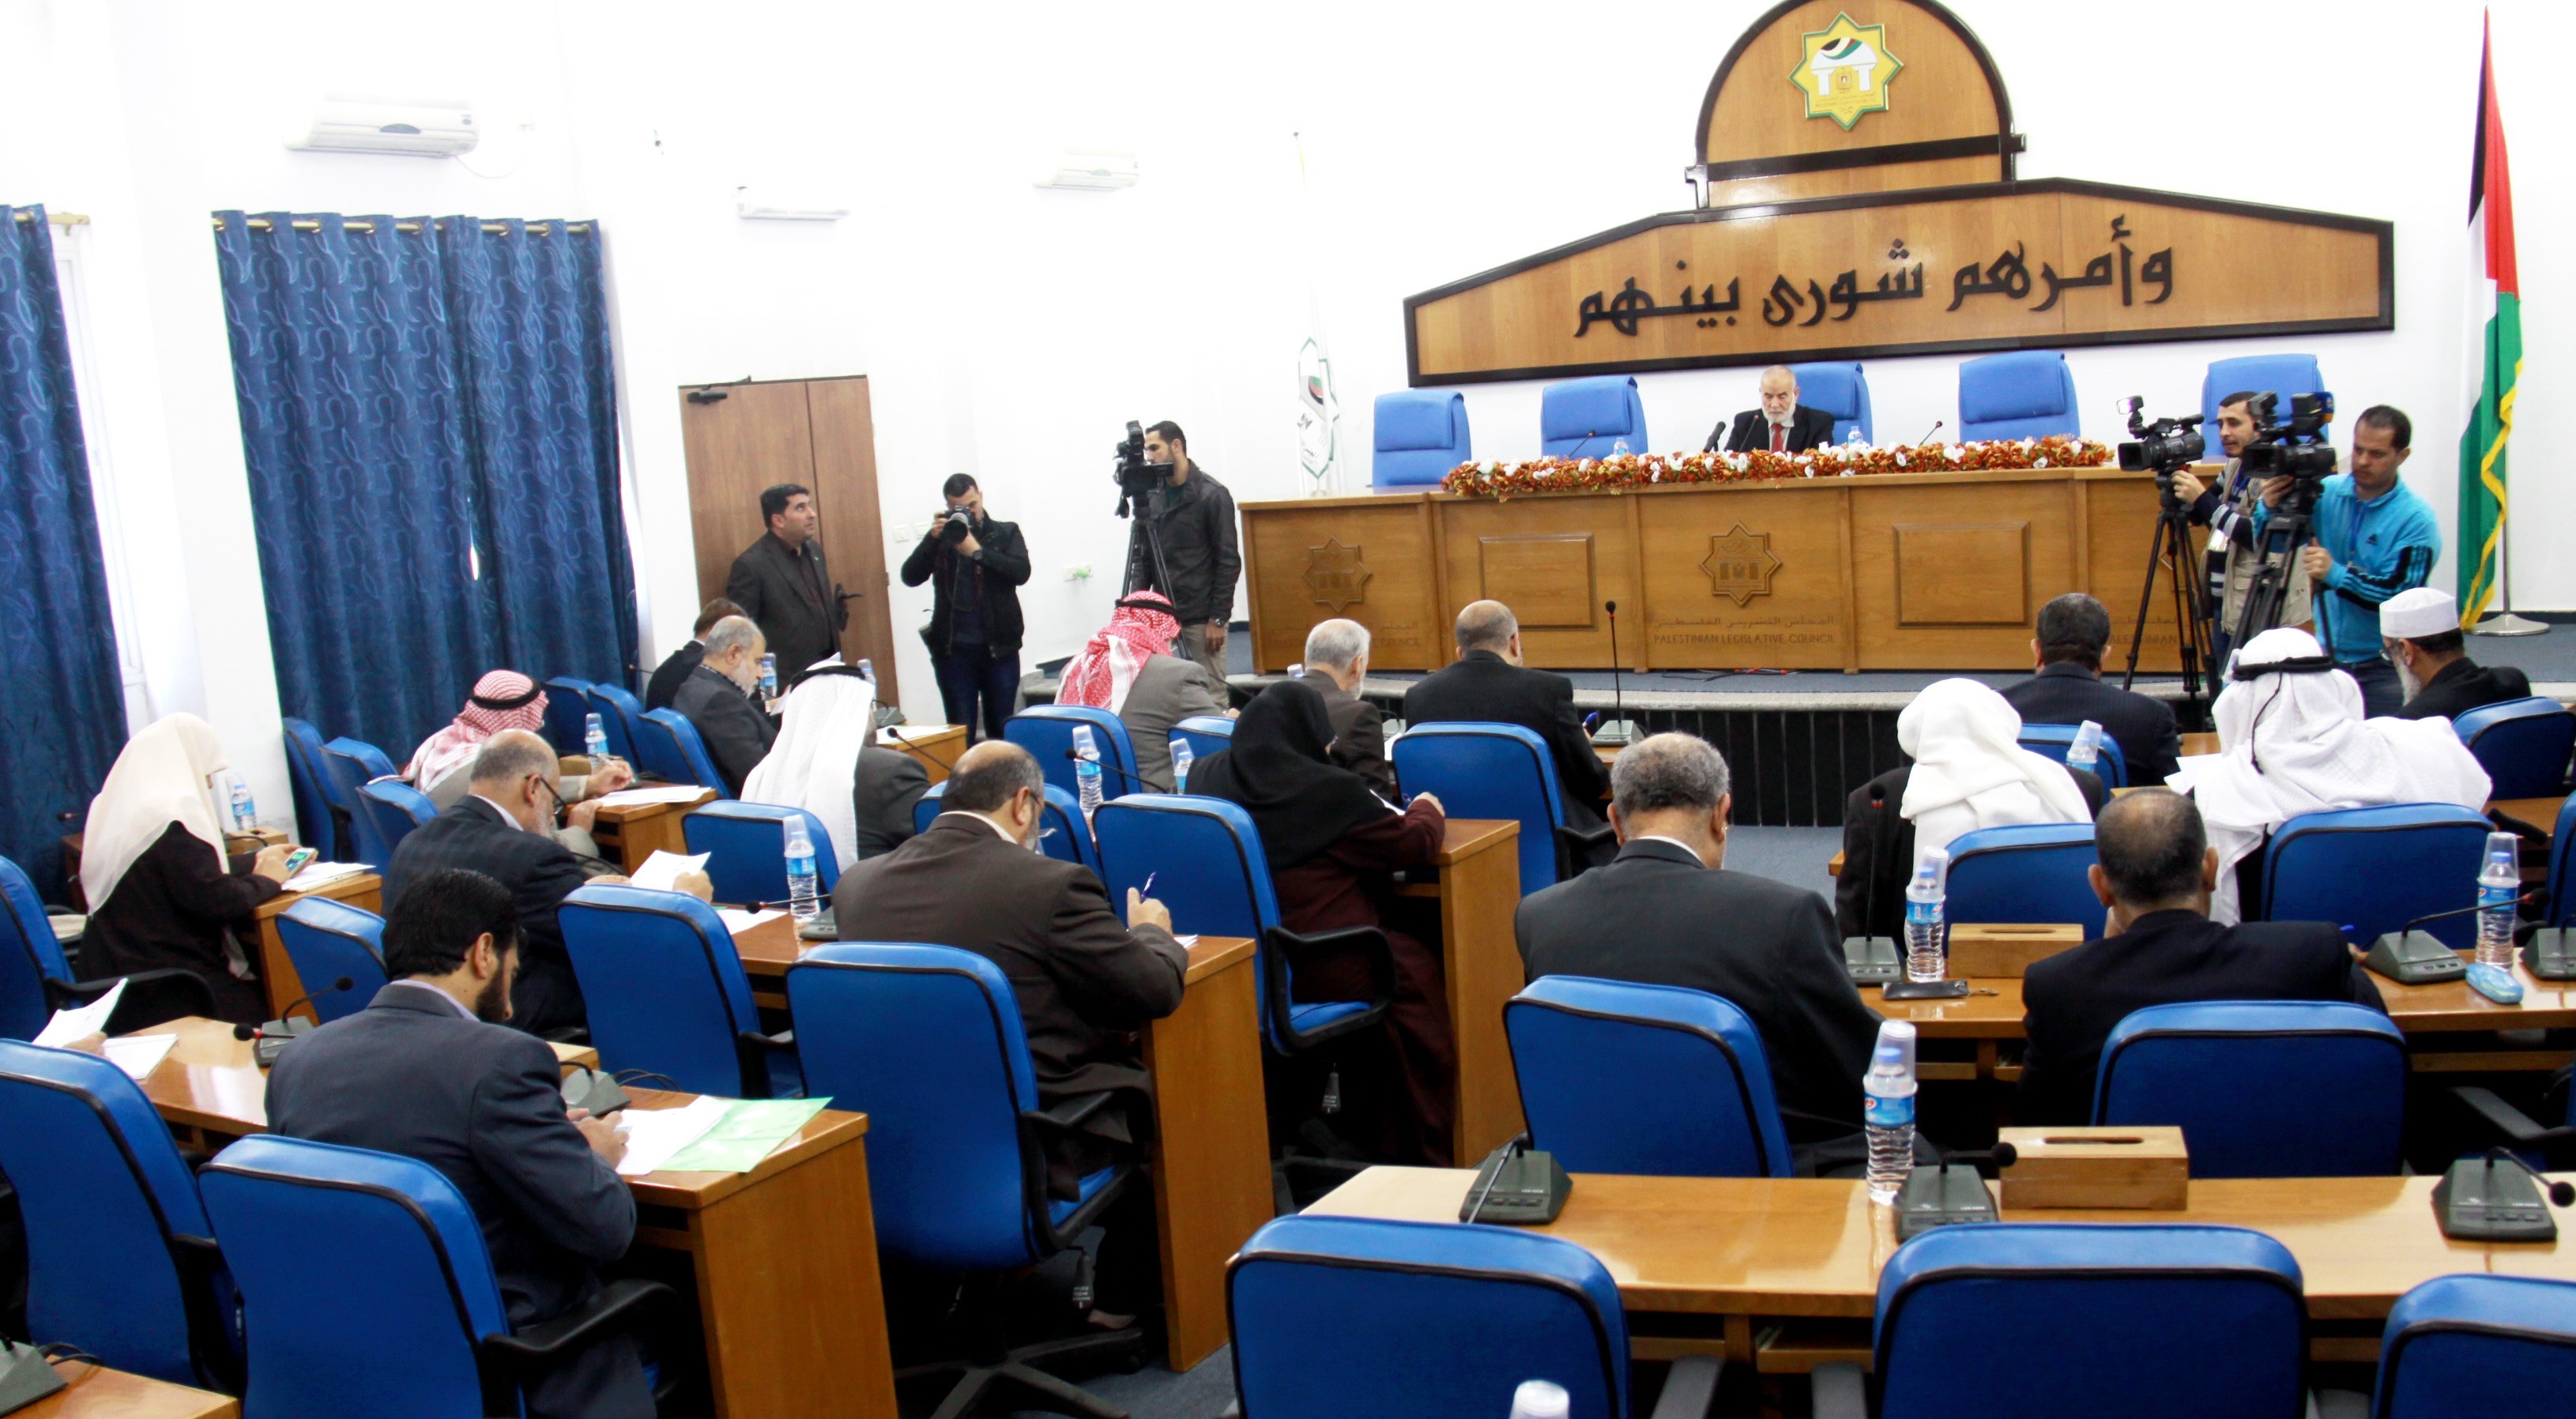 با صدور بیانیه هایی عنوان شد؛اجماع گروههای فلسطینی در مخالفت با تصمیم ابومازن درباره انحلال مجلس قانونگذاری فلسطین 2